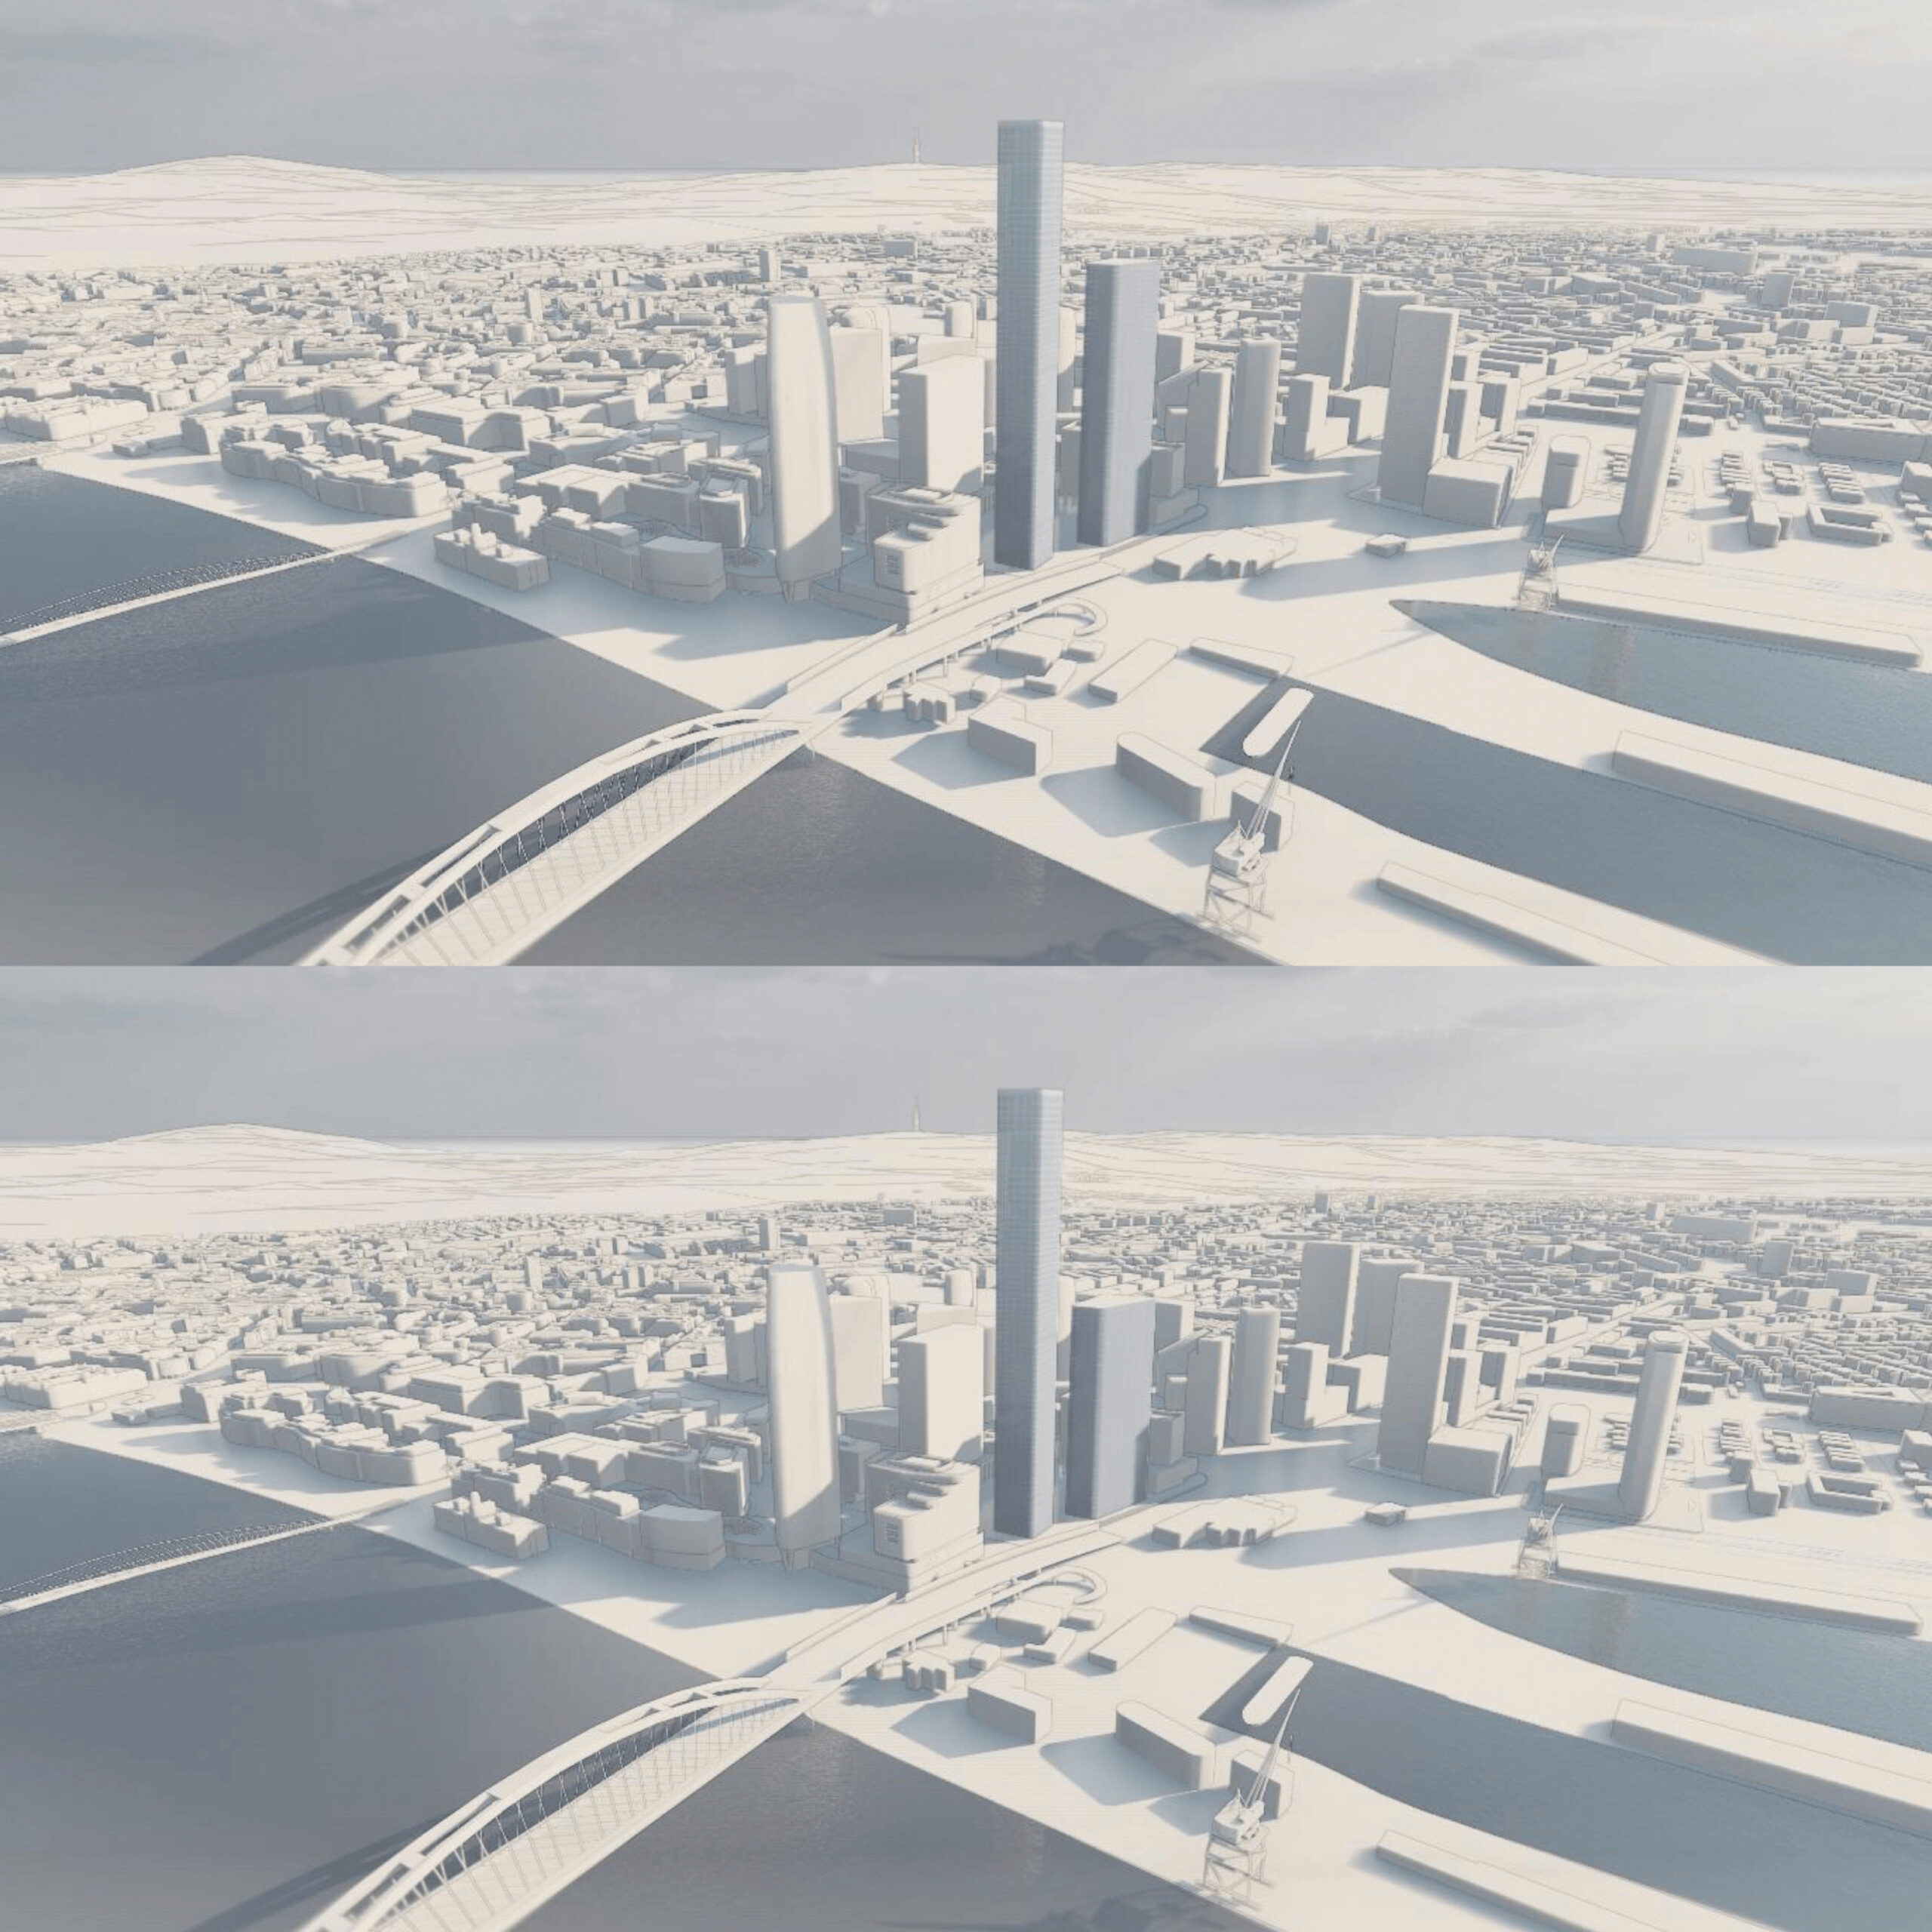 Porovnanie prvého variantu (hore) s dvomi mrakodrapmi o výške 260 a 180 metrov a druhého variantu (dole), kde sa mení len výška druhej budovy na 137 metrov